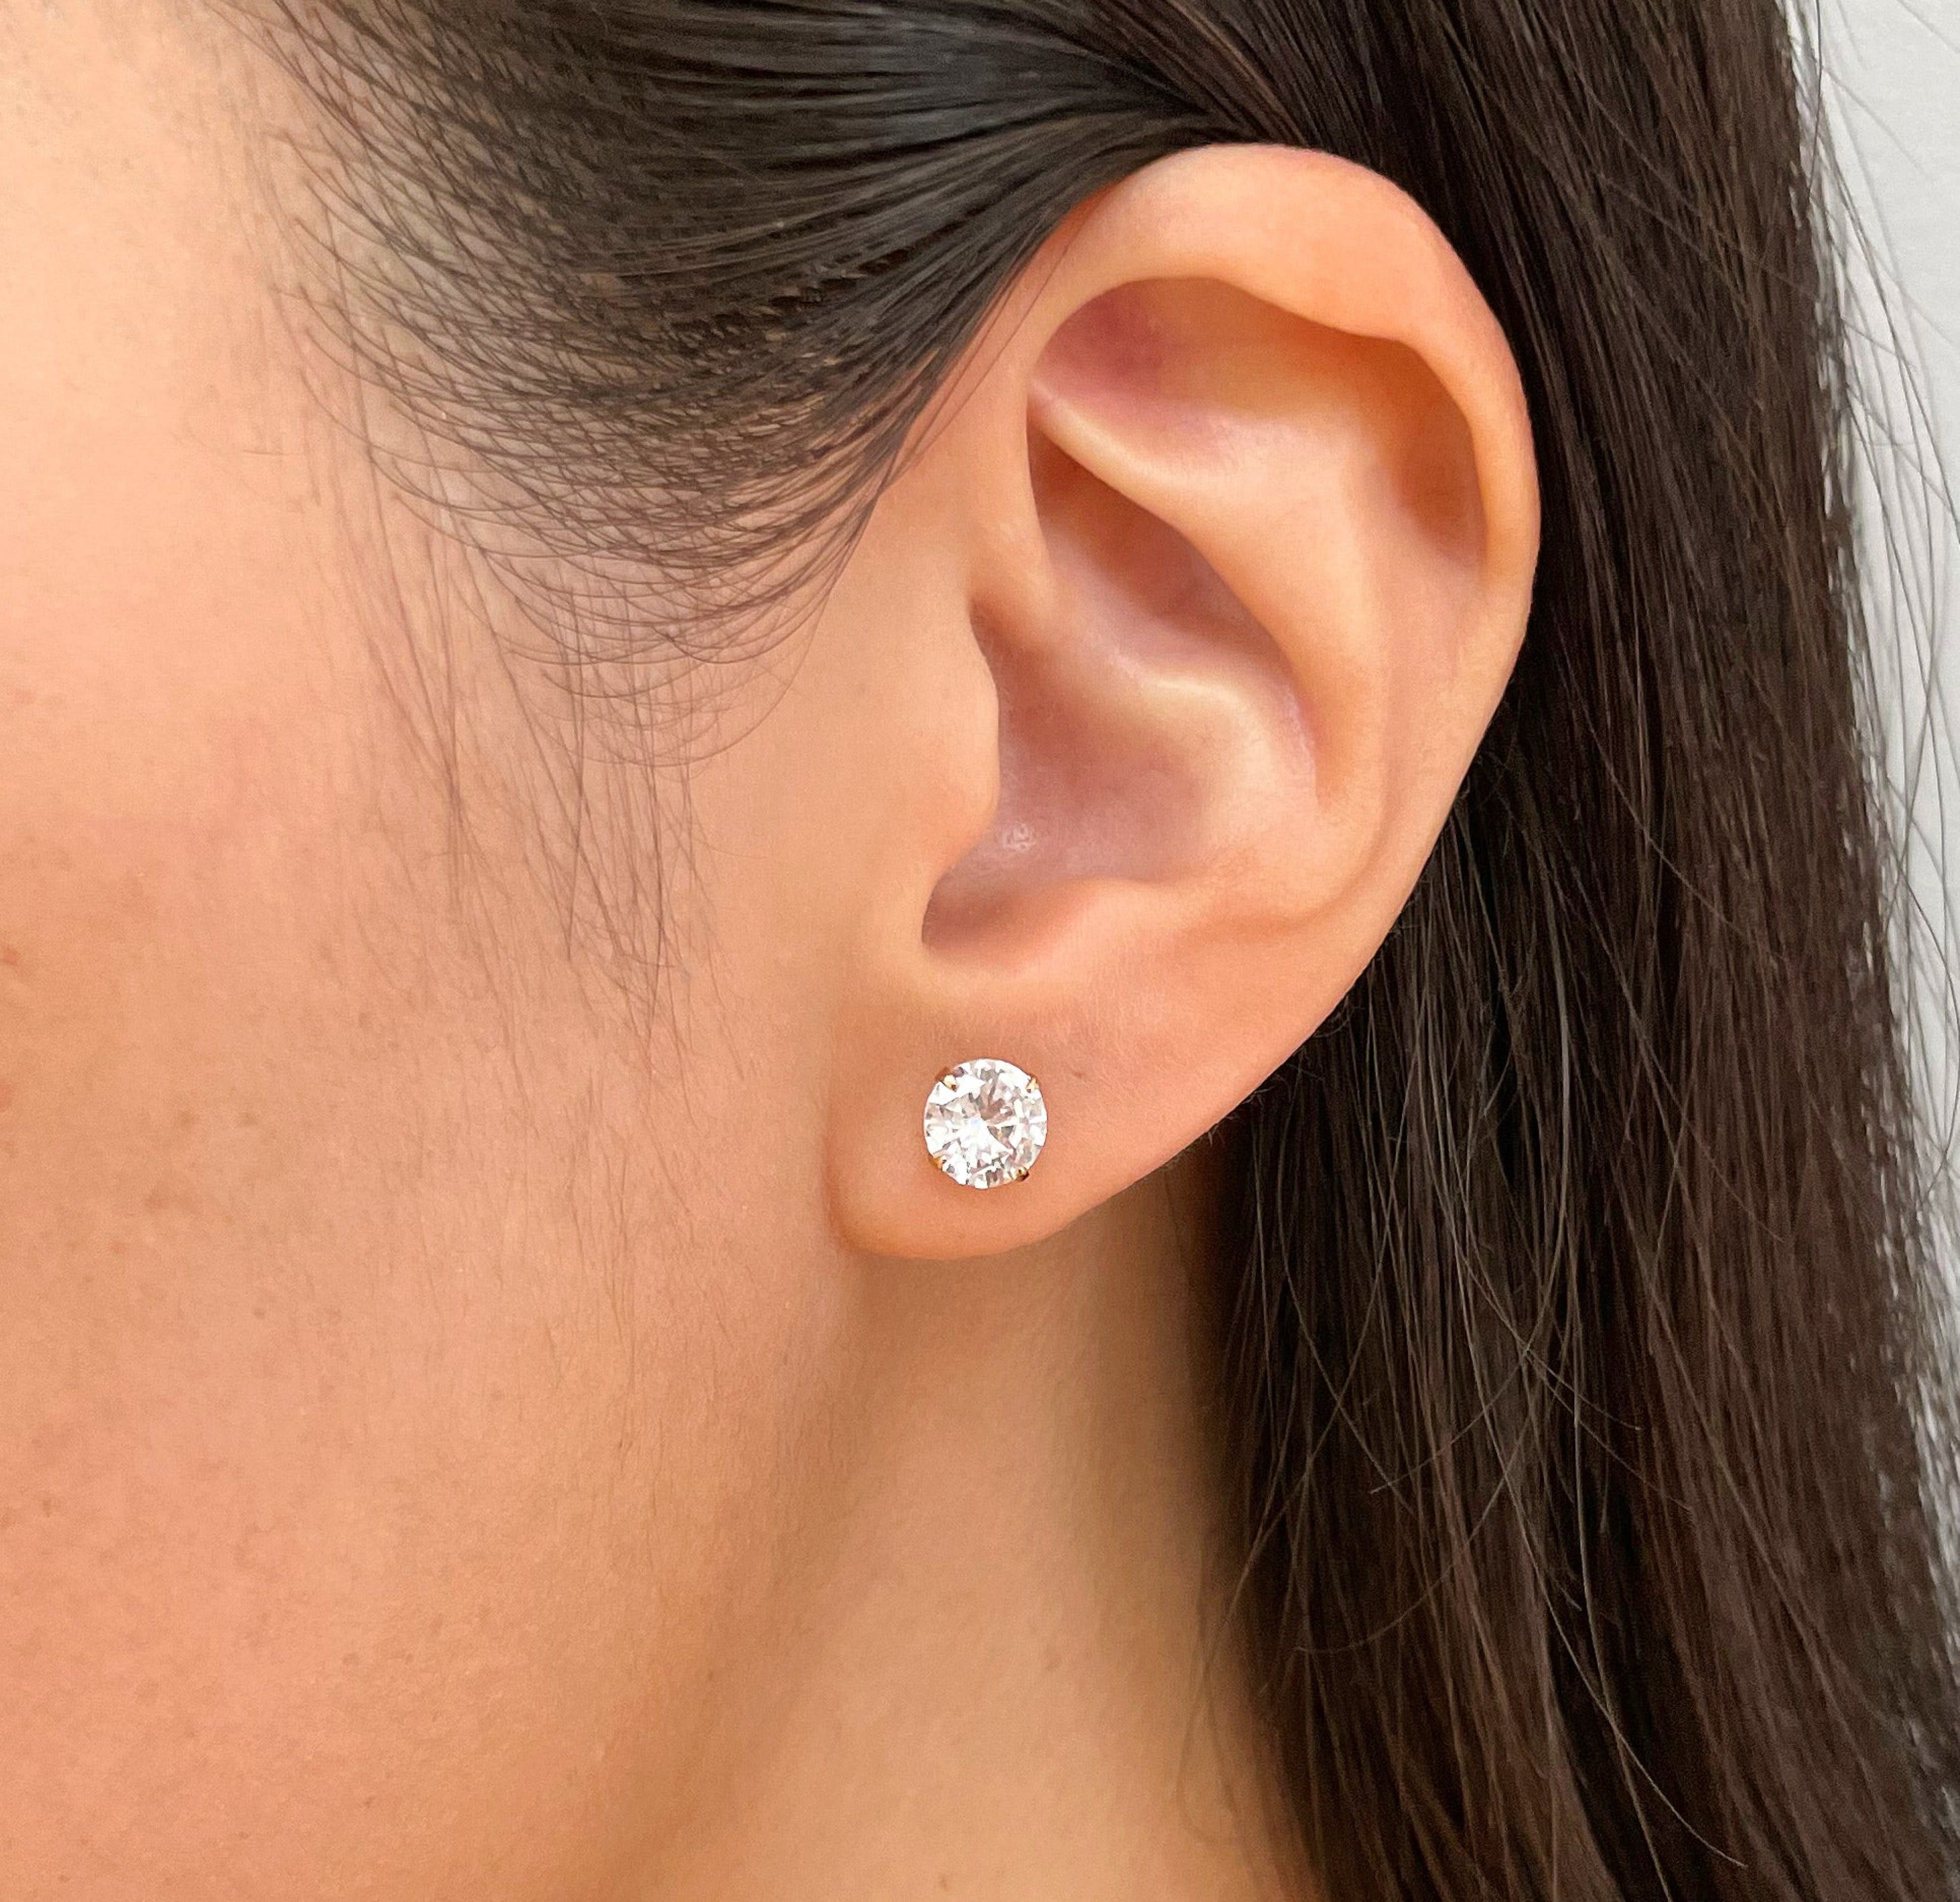 2ct diamond stud earrings waterproof jewelry